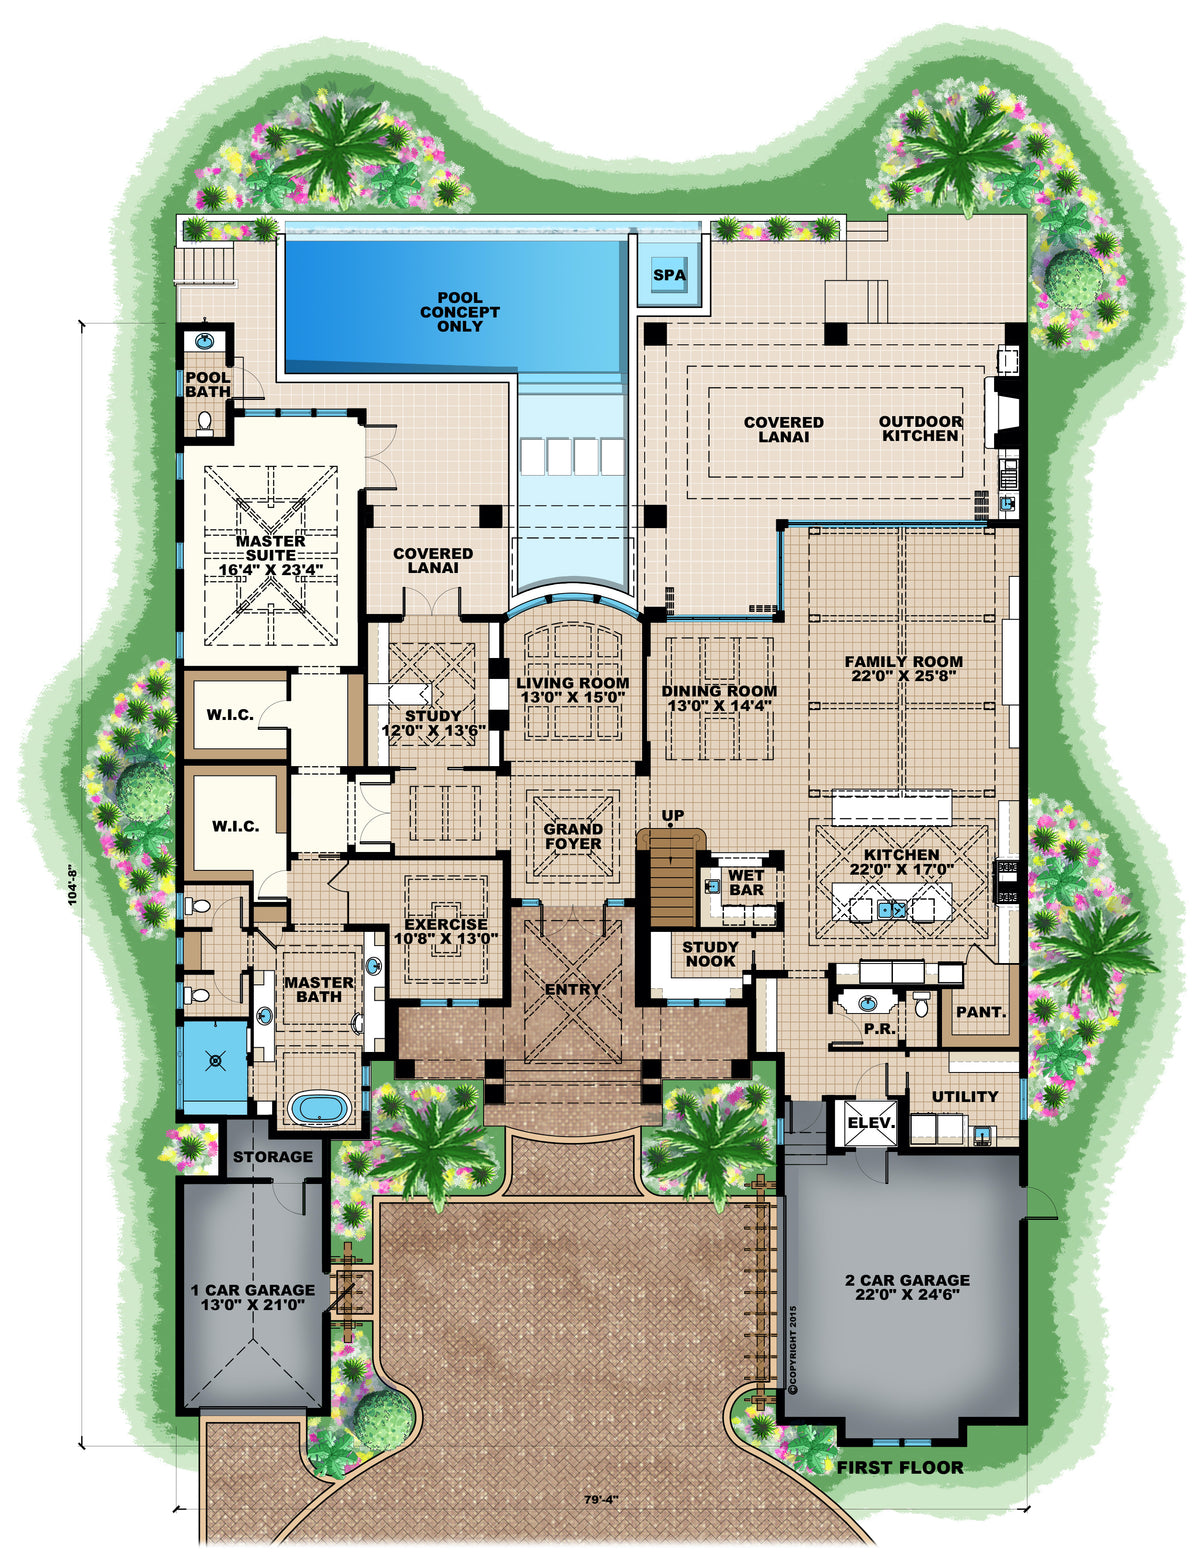 Grand Cayman First Floor Plan